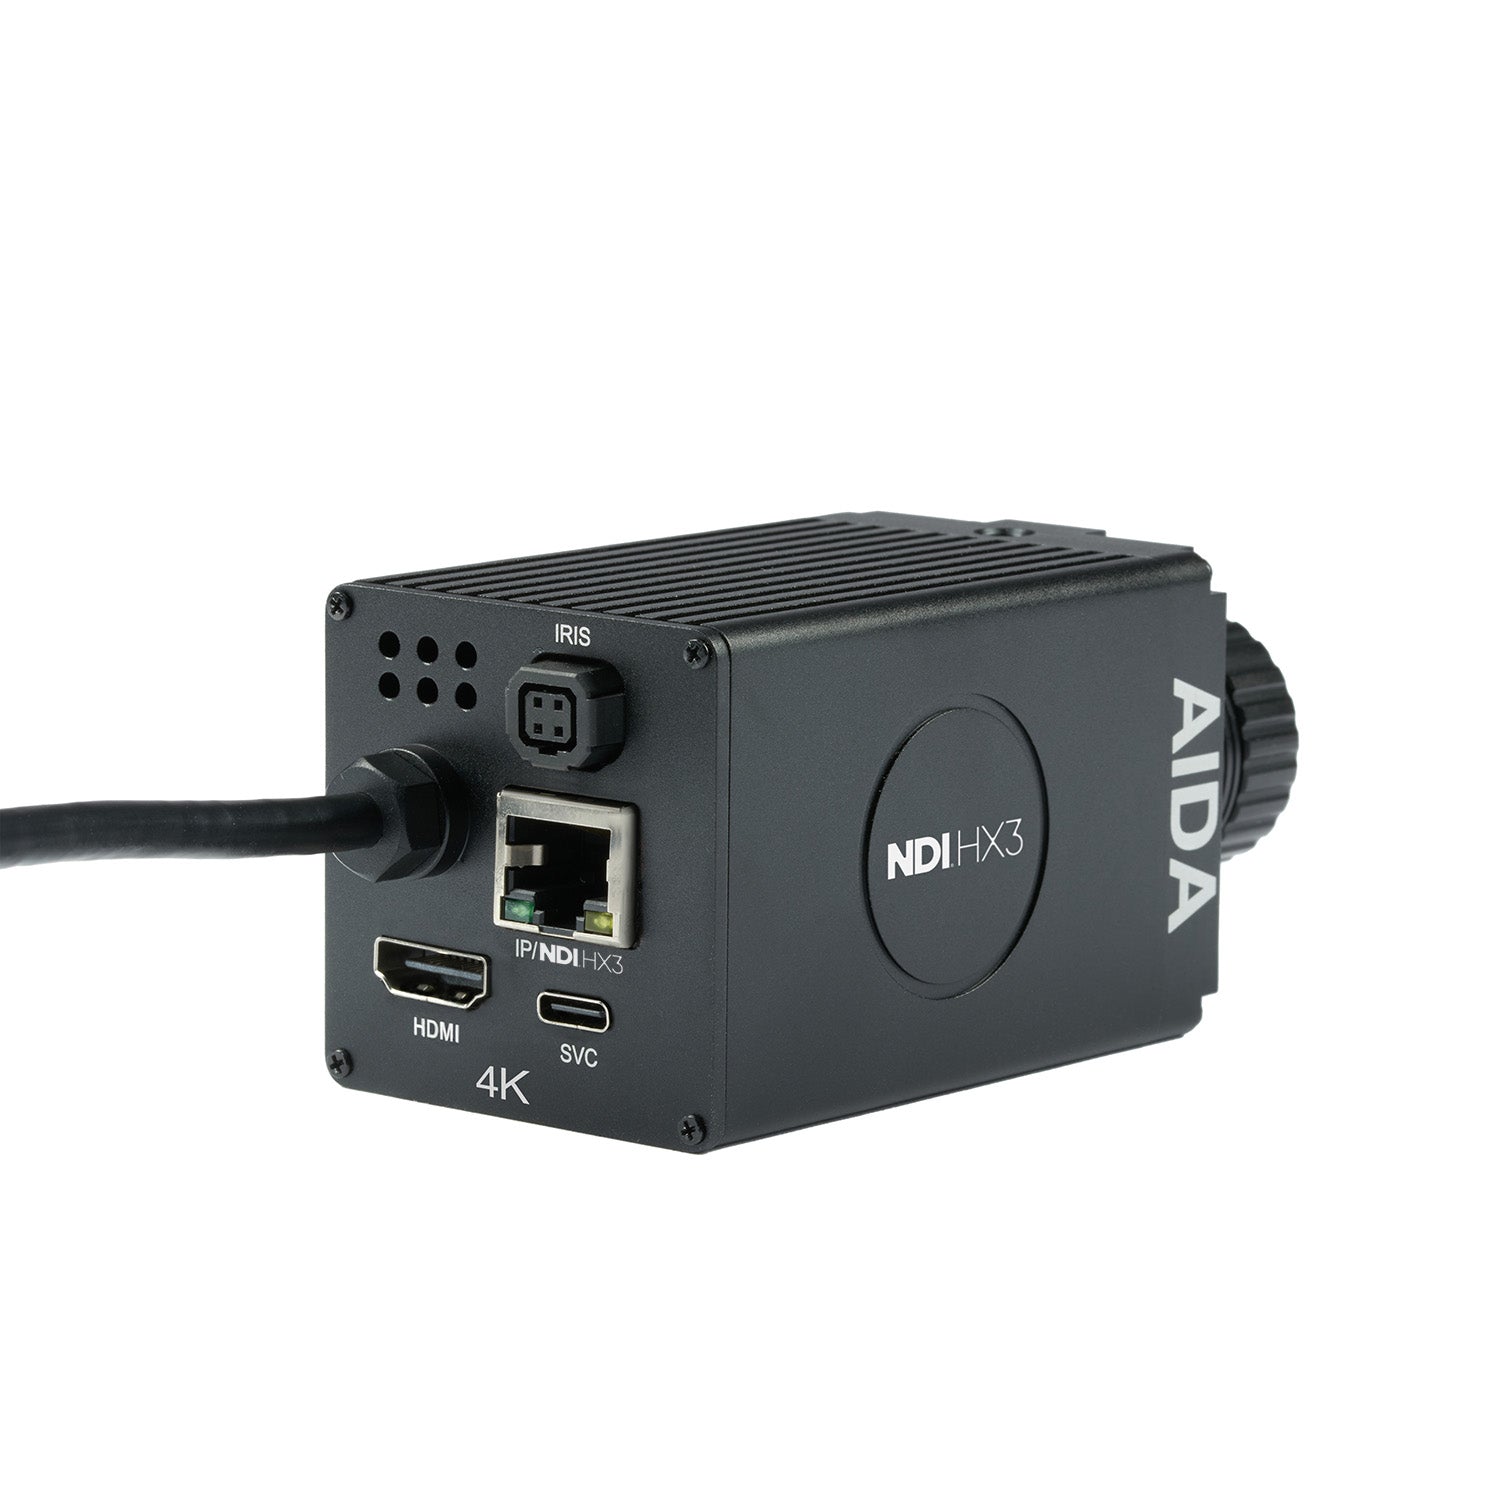 AIDA Imaging UHD-NDI3-300 - UHD 4K/60 NDI|HX3 HDMI POV Camera, rear angle